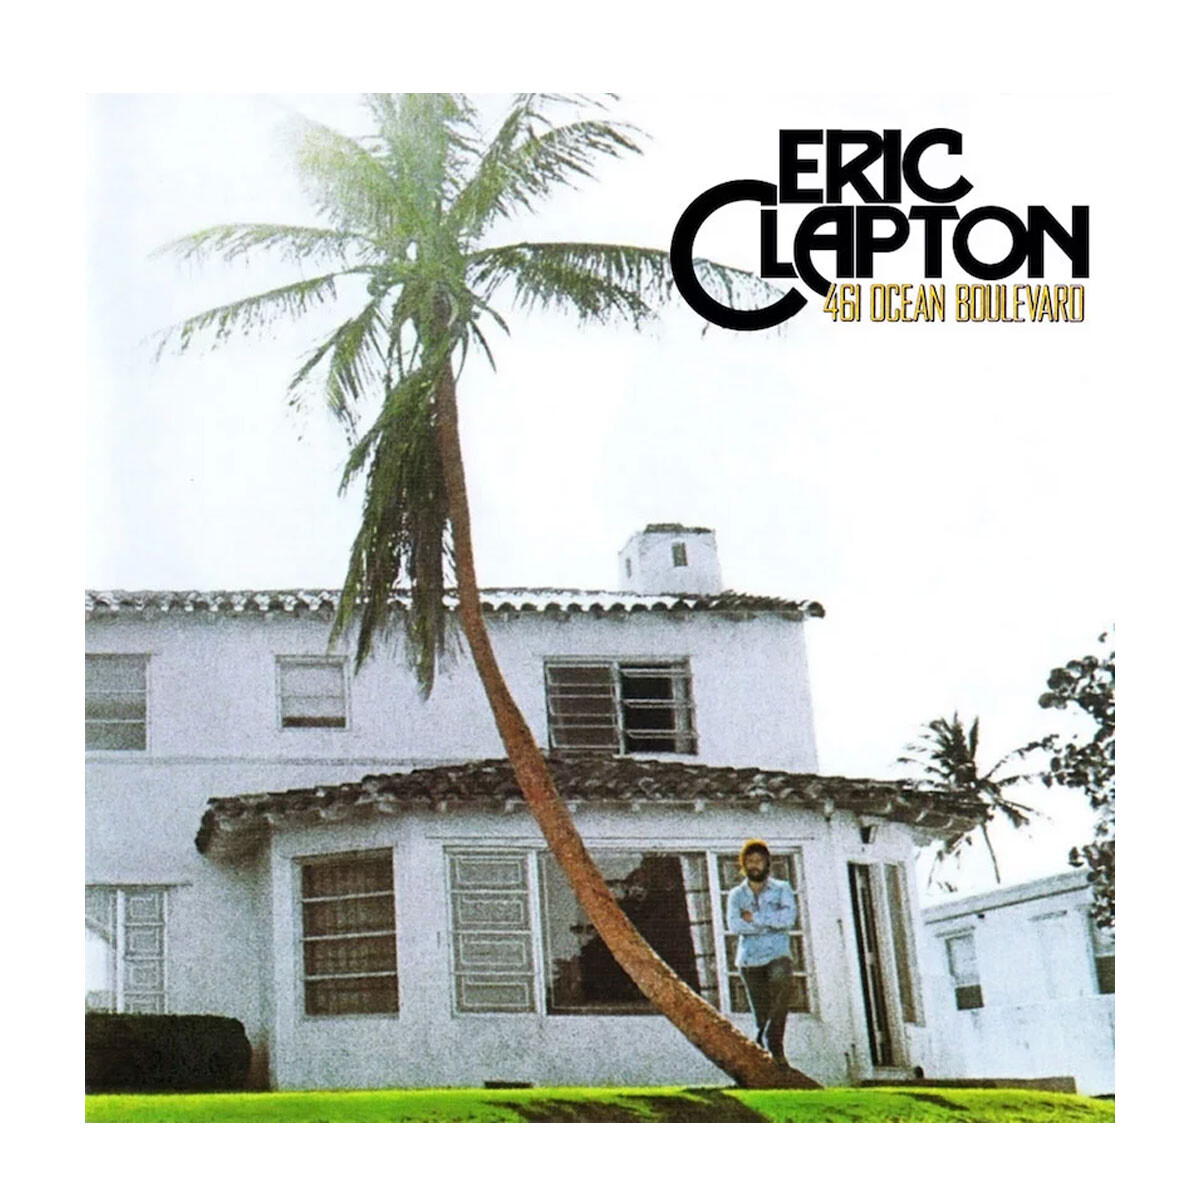 Clapton Eric-461 Ocean Boulevard 